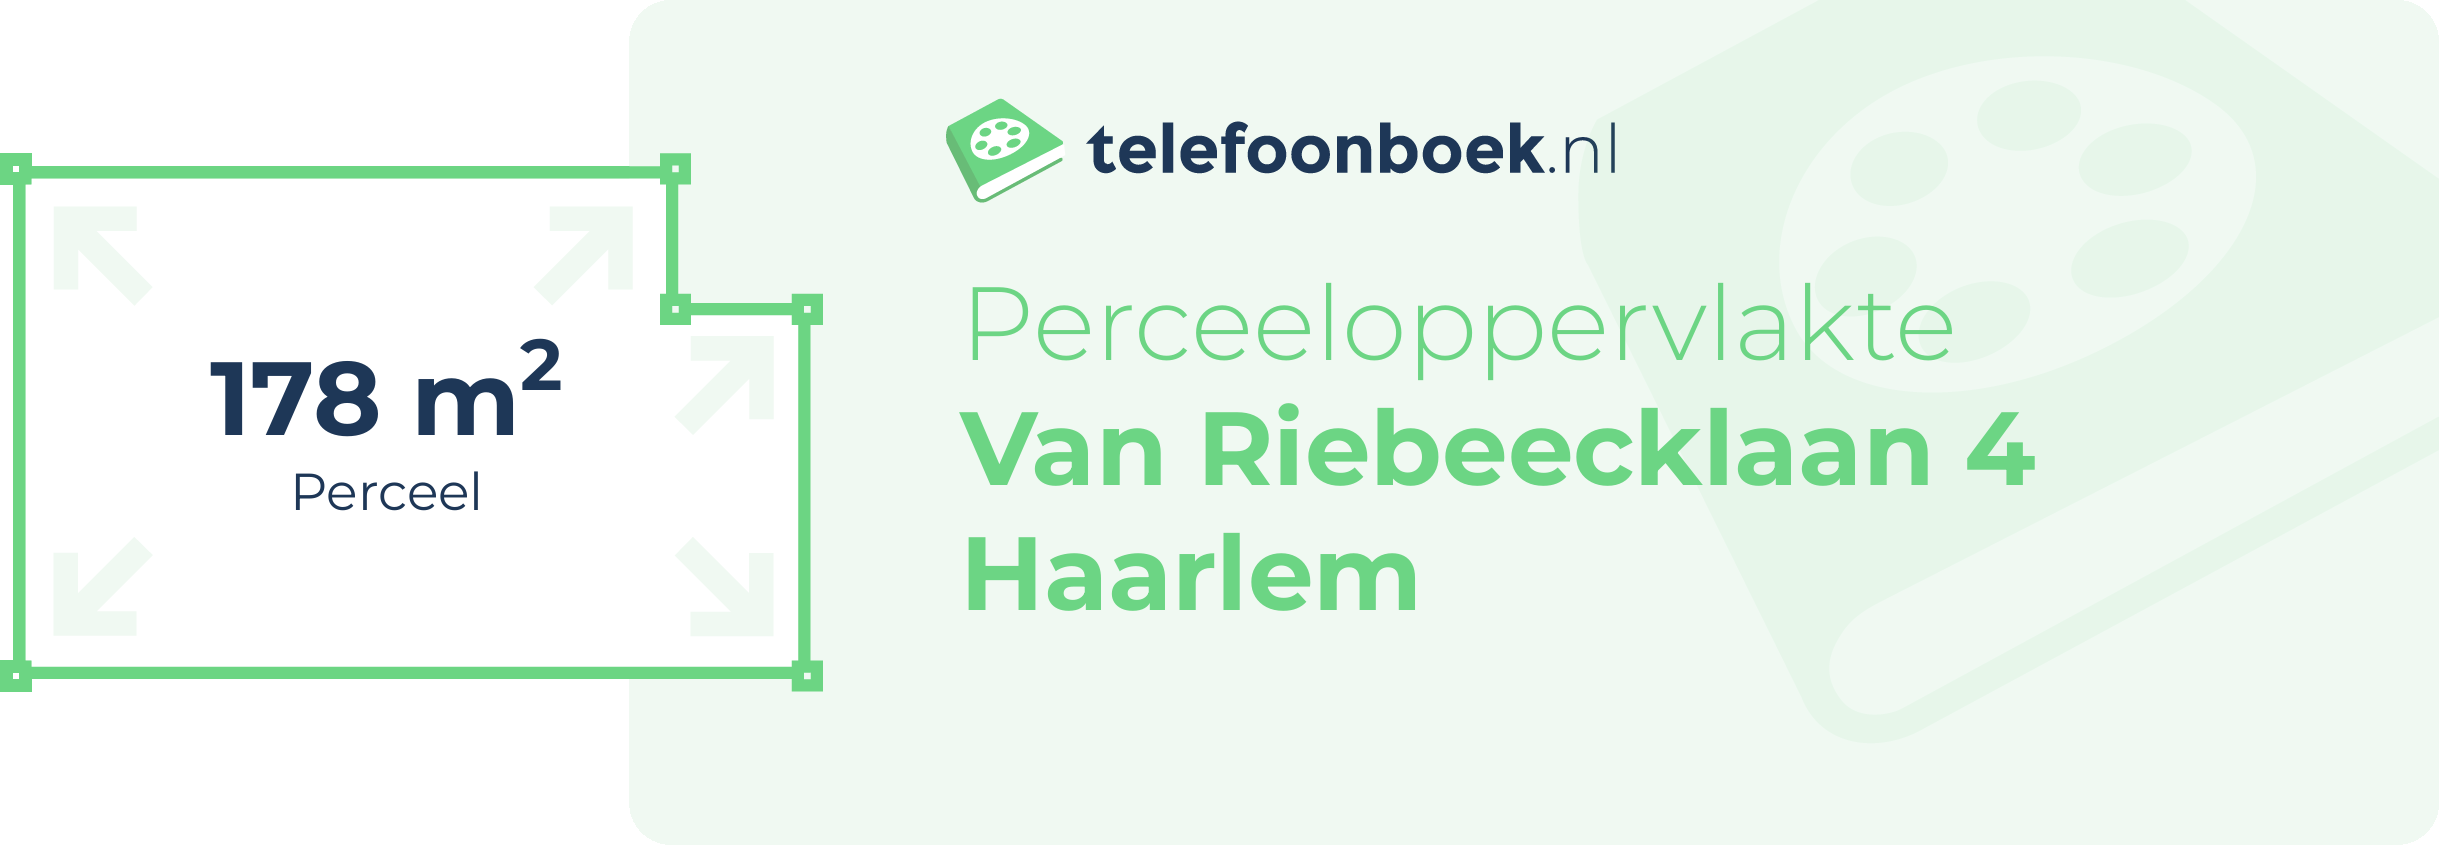 Perceeloppervlakte Van Riebeecklaan 4 Haarlem